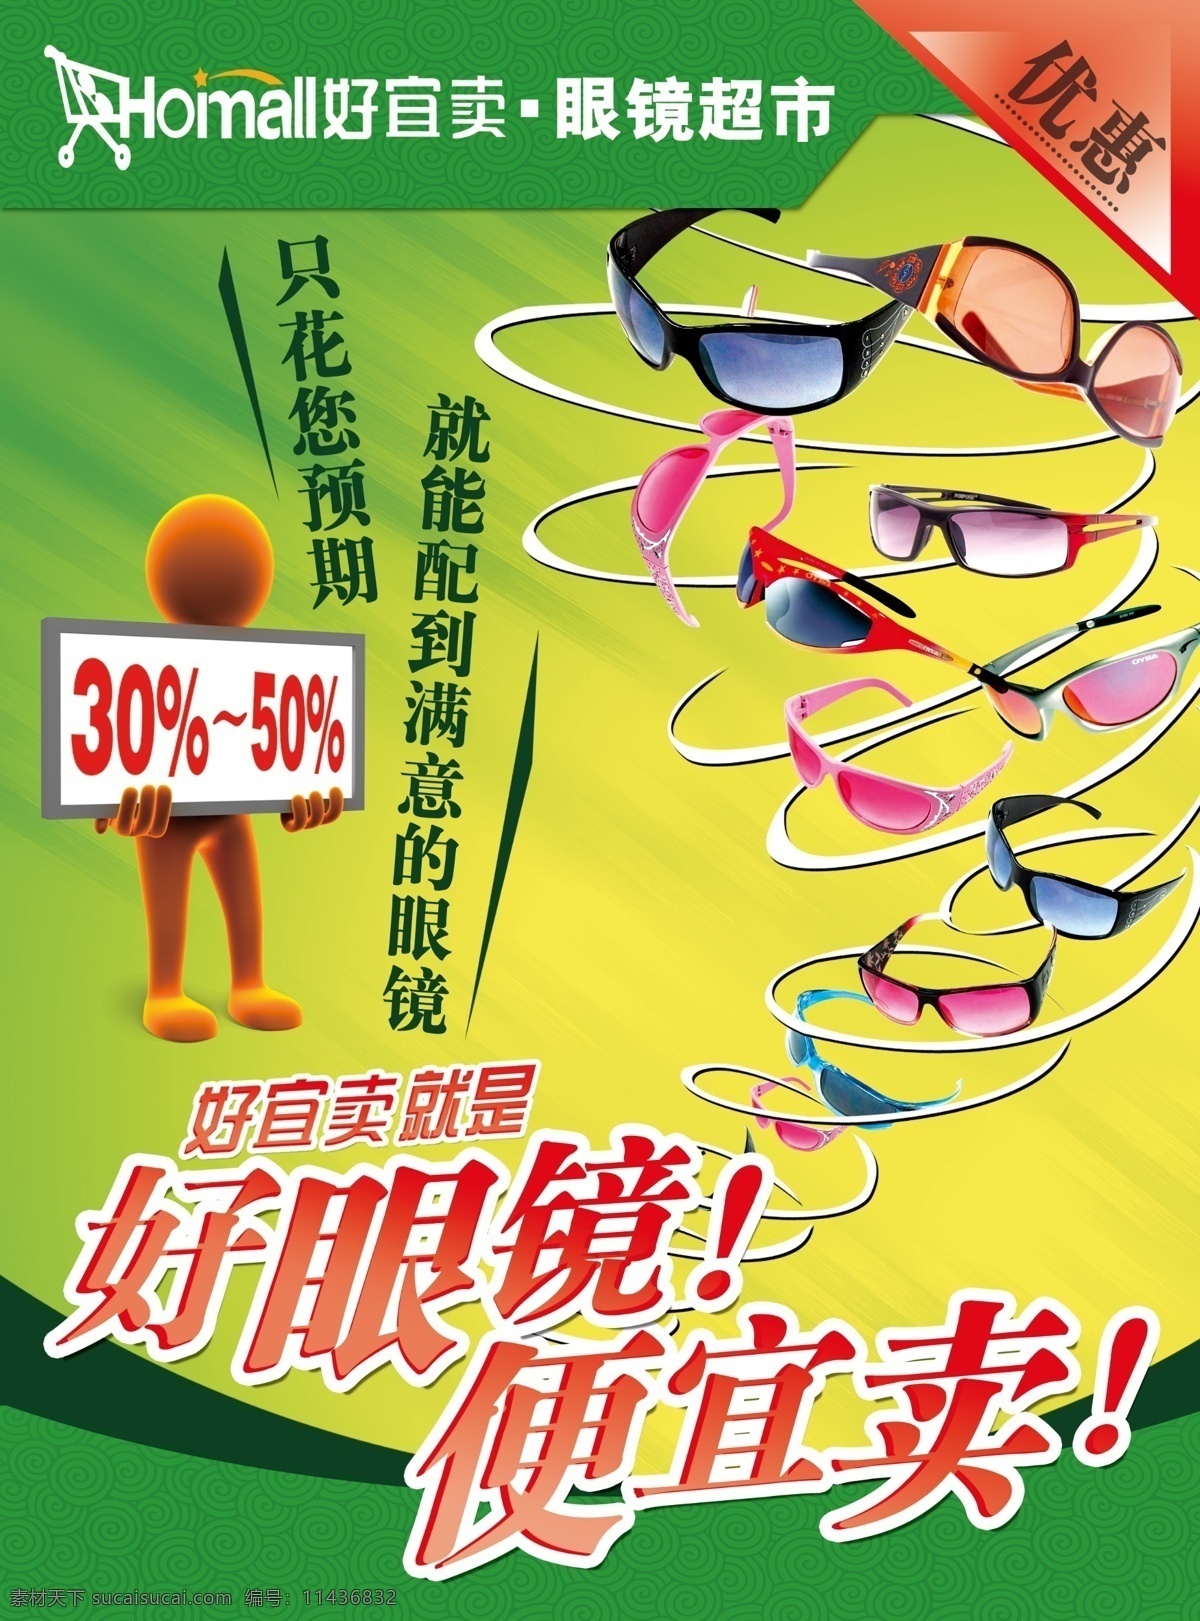 眼镜 超市 广告 单页模版 单页设计 眼镜超市 psd源文件